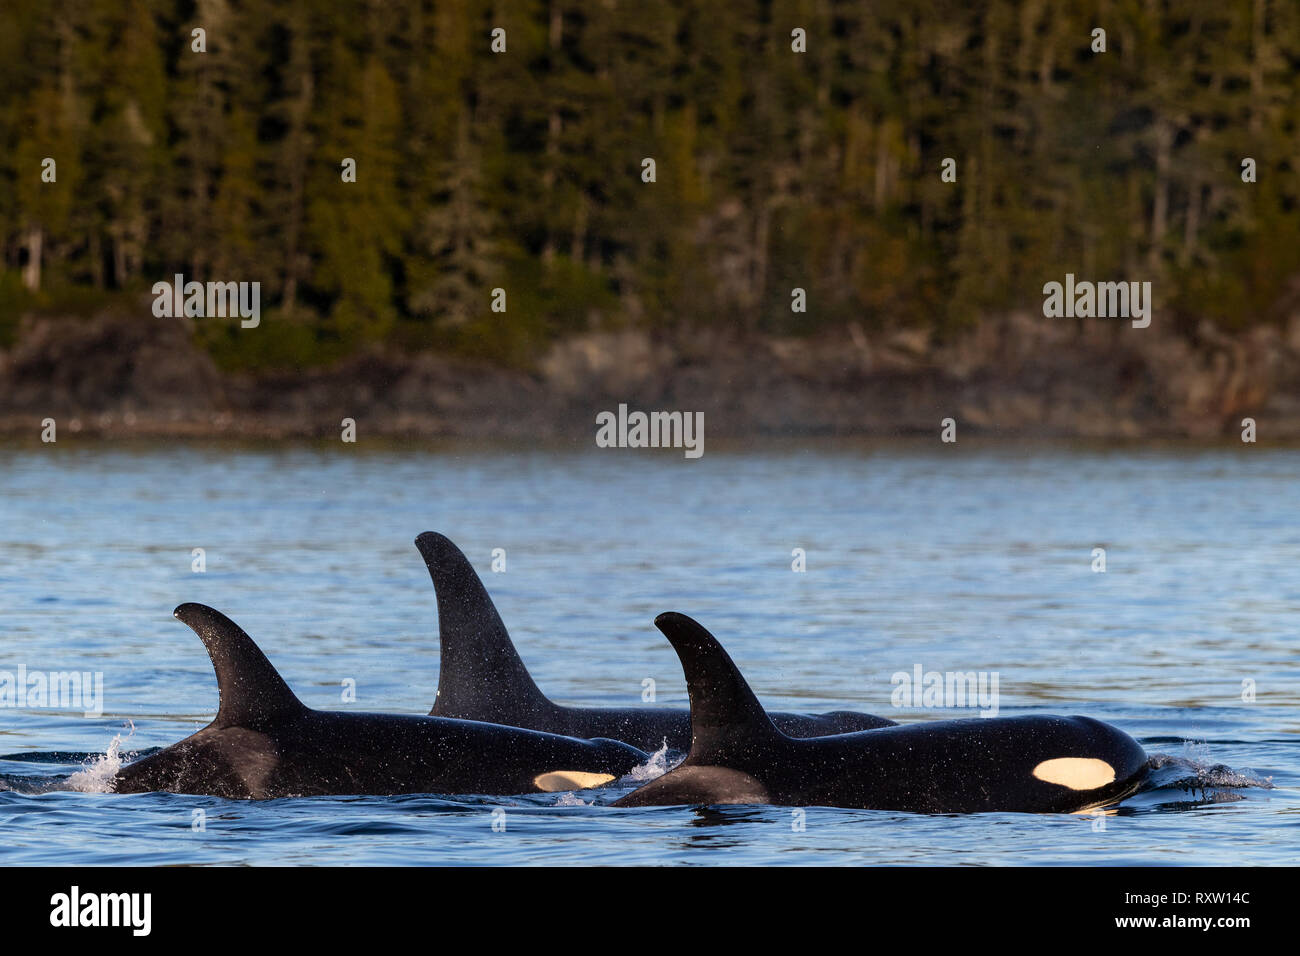 Orcas residentes del norte que descansan a lo largo de la costa de la isla hanson cerca del archipiélago de Broughton, Territorio de las primeras Naciones, Columbia Británica, Canadá Foto de stock